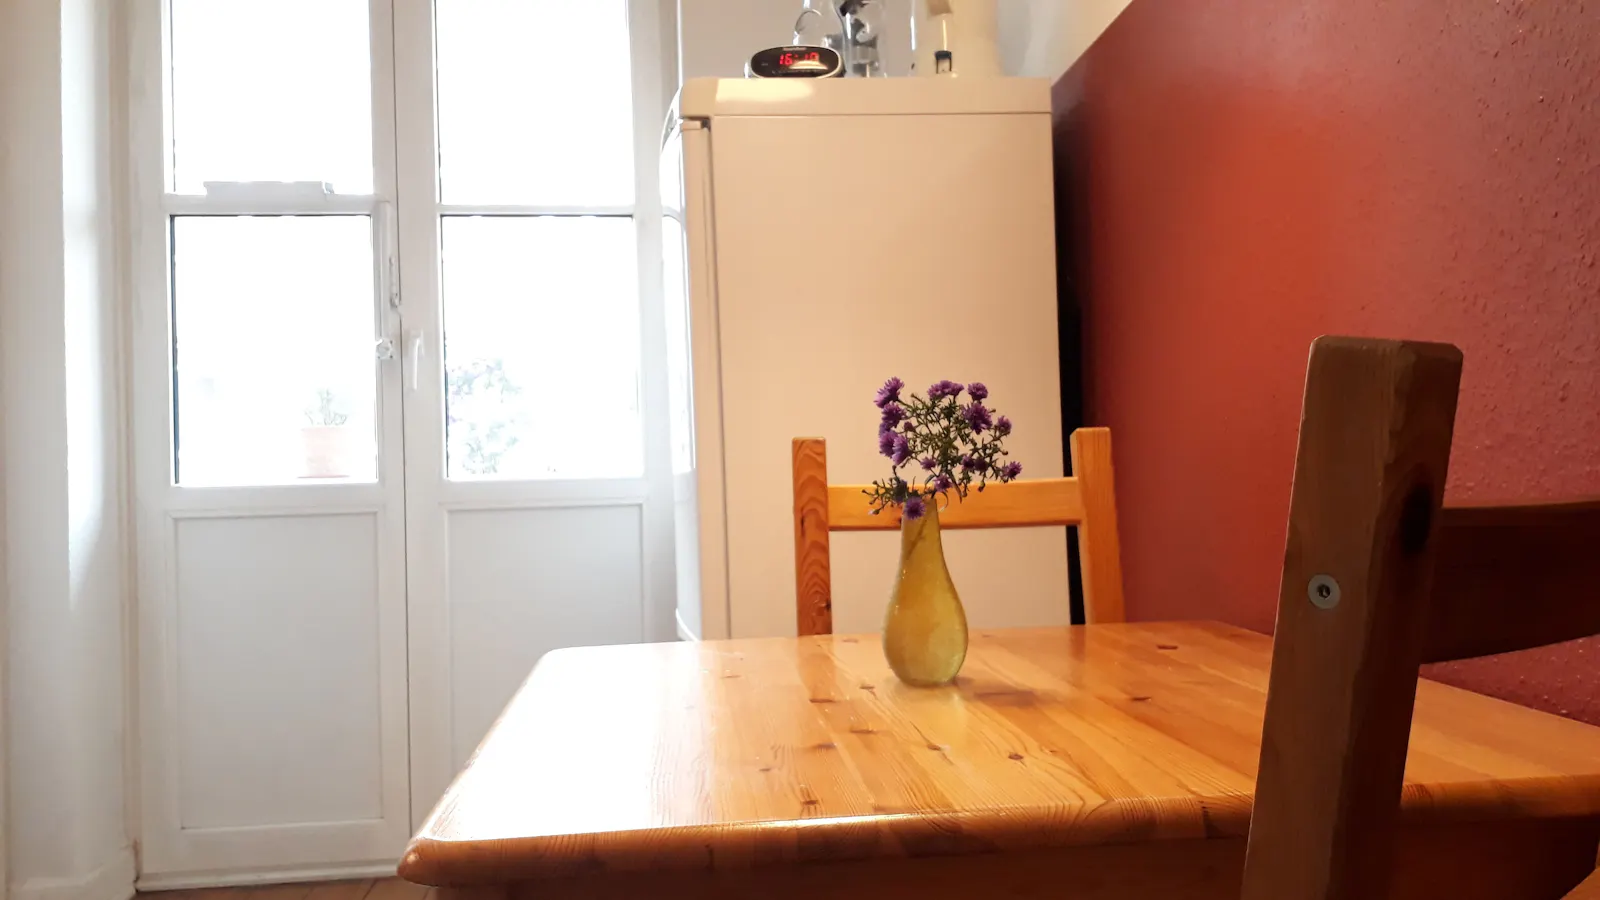 Küchentisch aus hellem Holz mit zwei Stühlen, kleine gelbe Vase mit violetten Blumen darauf. Im Hintergrund Balkontür und Kühlschrank.